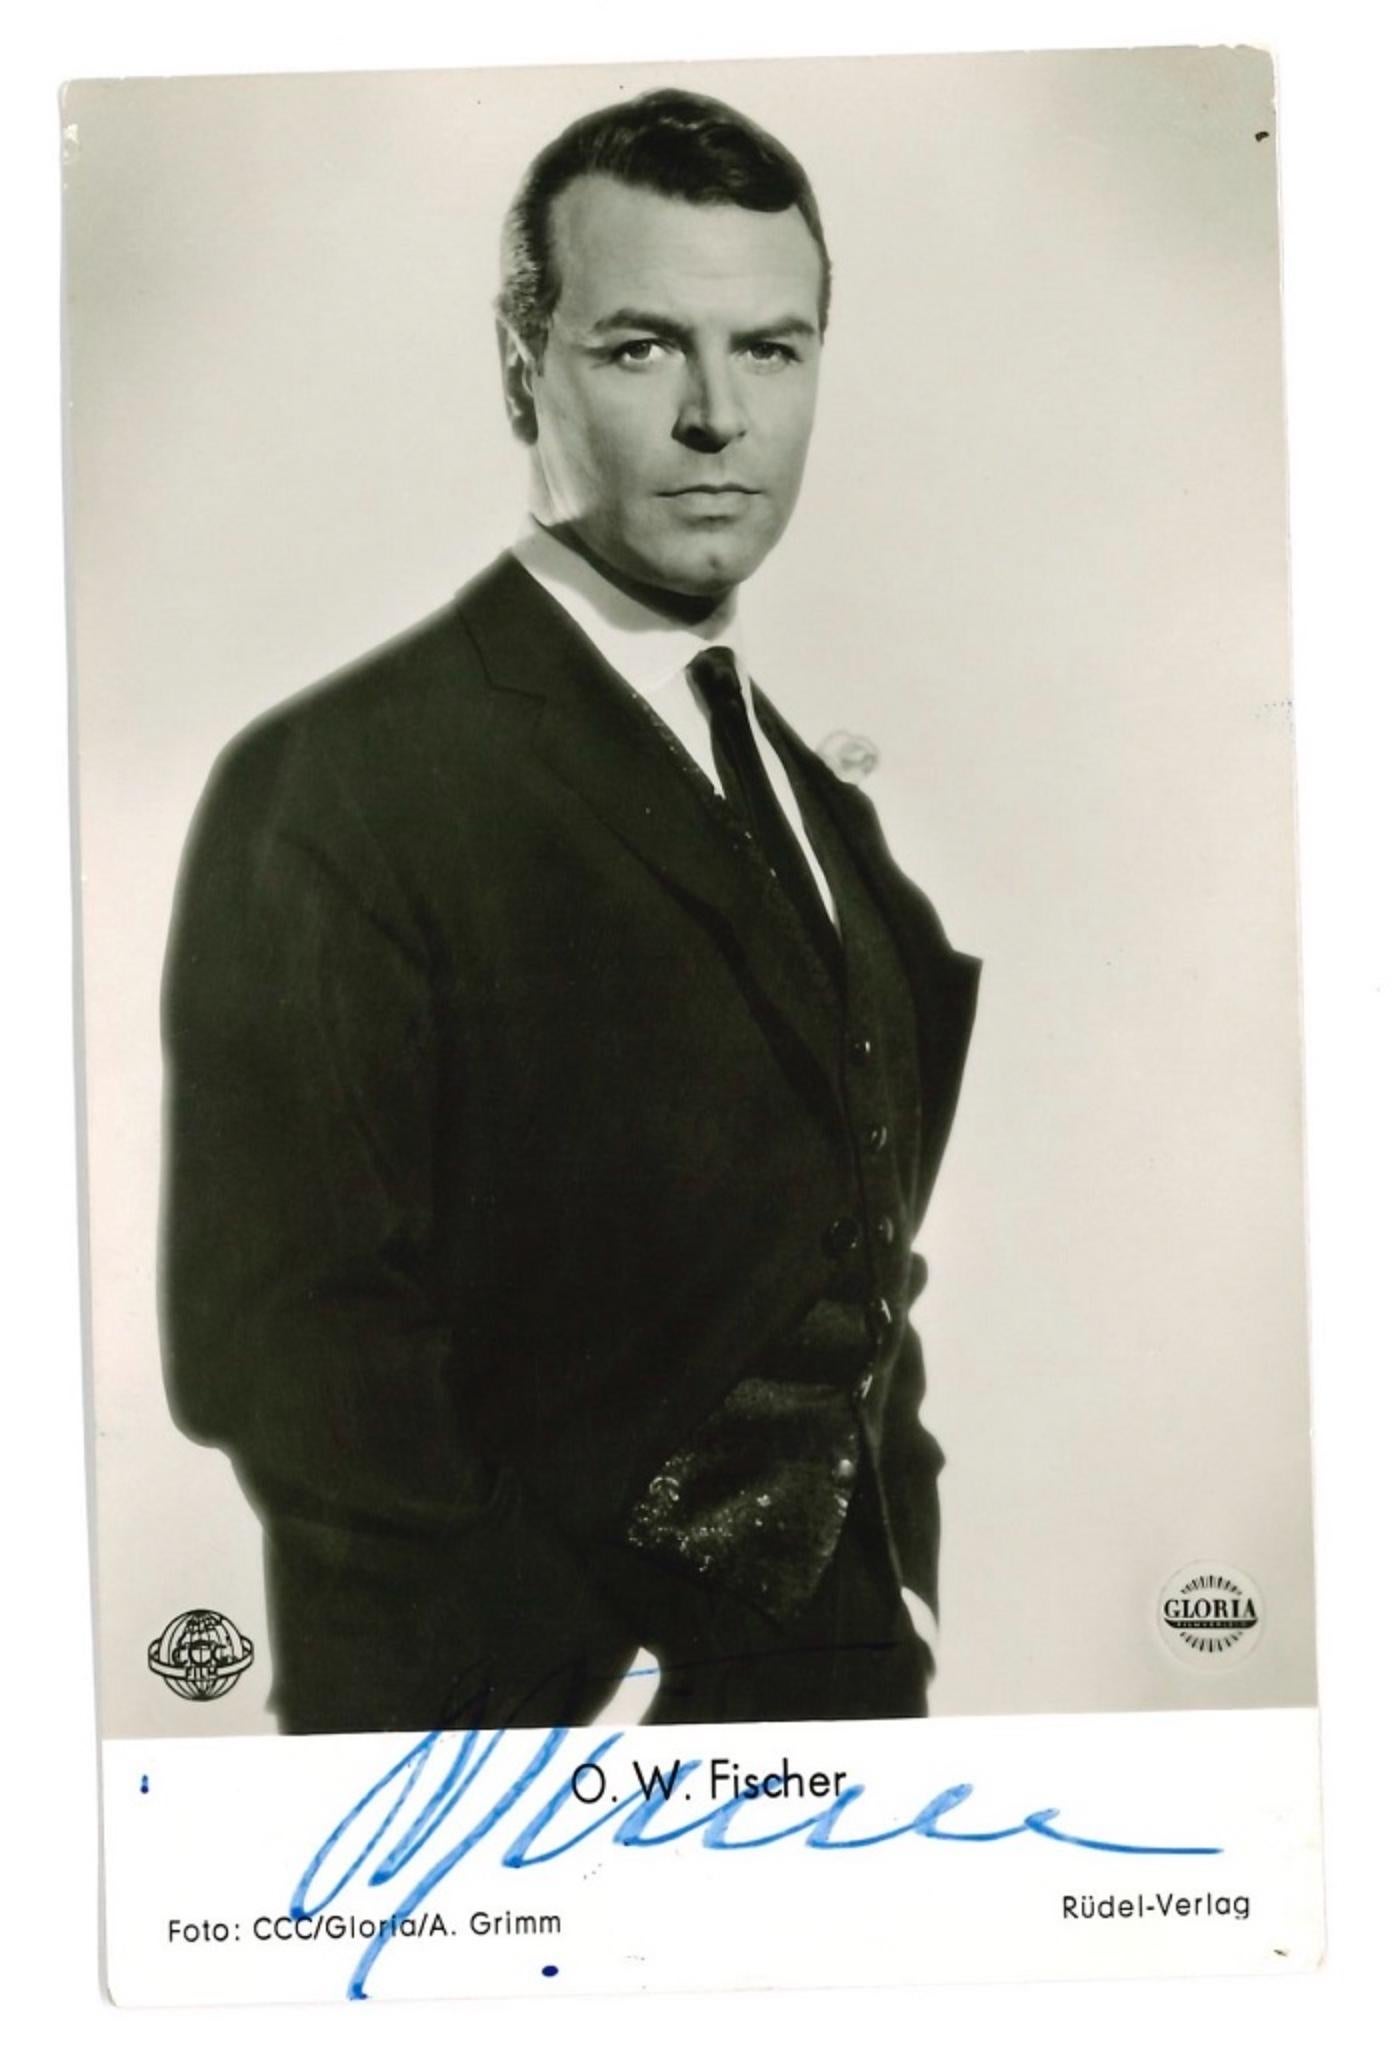 Unknown Portrait Photograph - Autographed Portrait of O. W. Fischer - Vintage b/w Postcard - 1950s